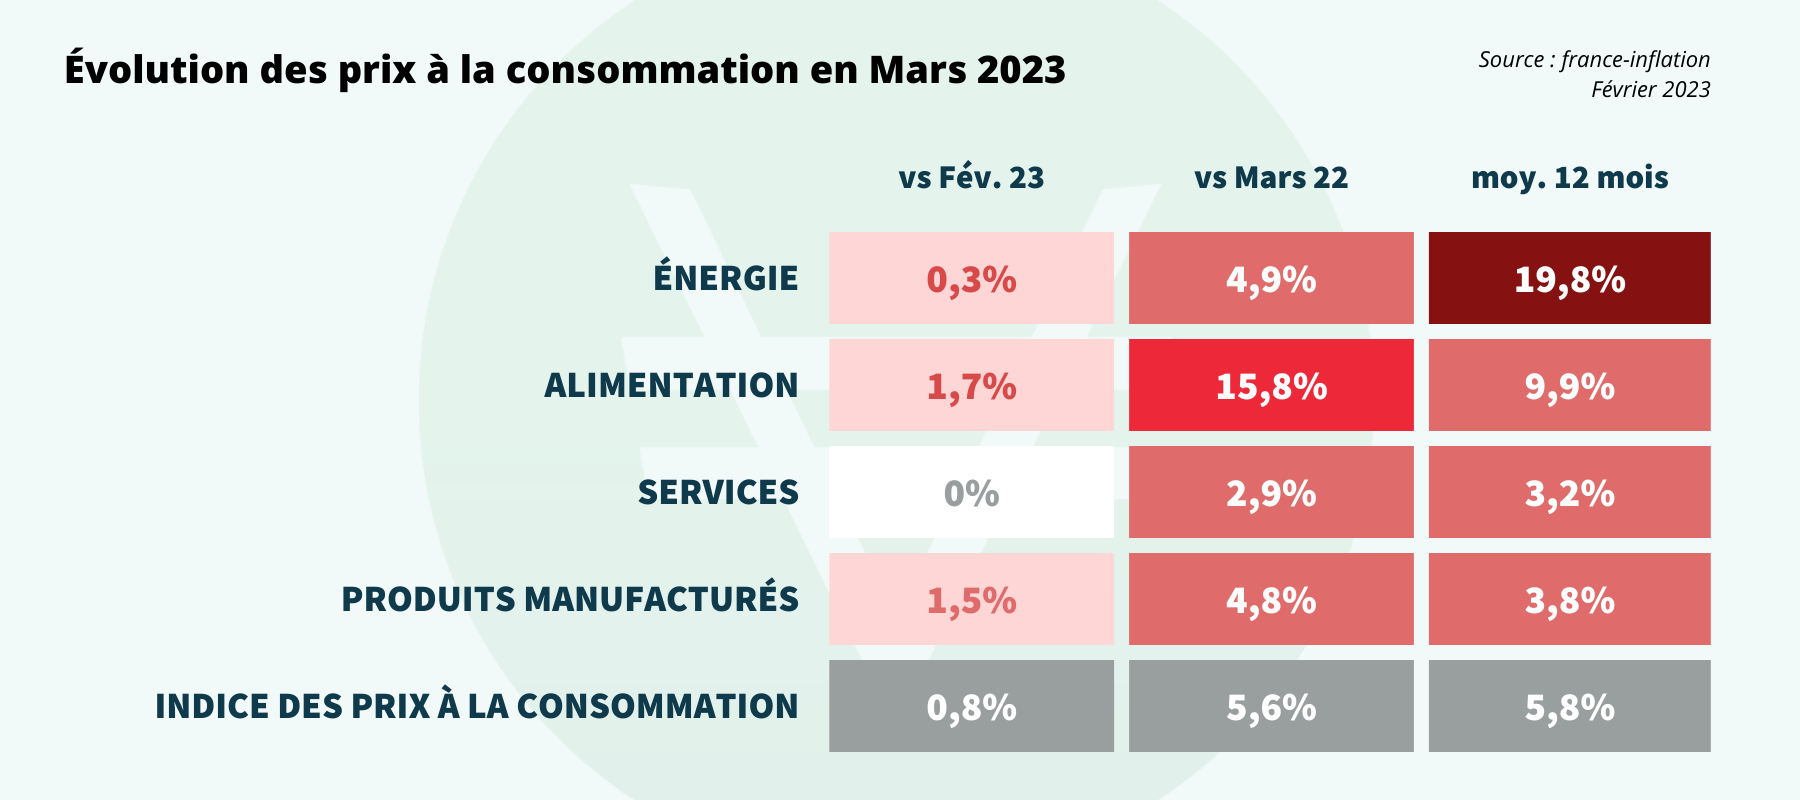 tableau des indices des prix a la consommation - Mars 2023